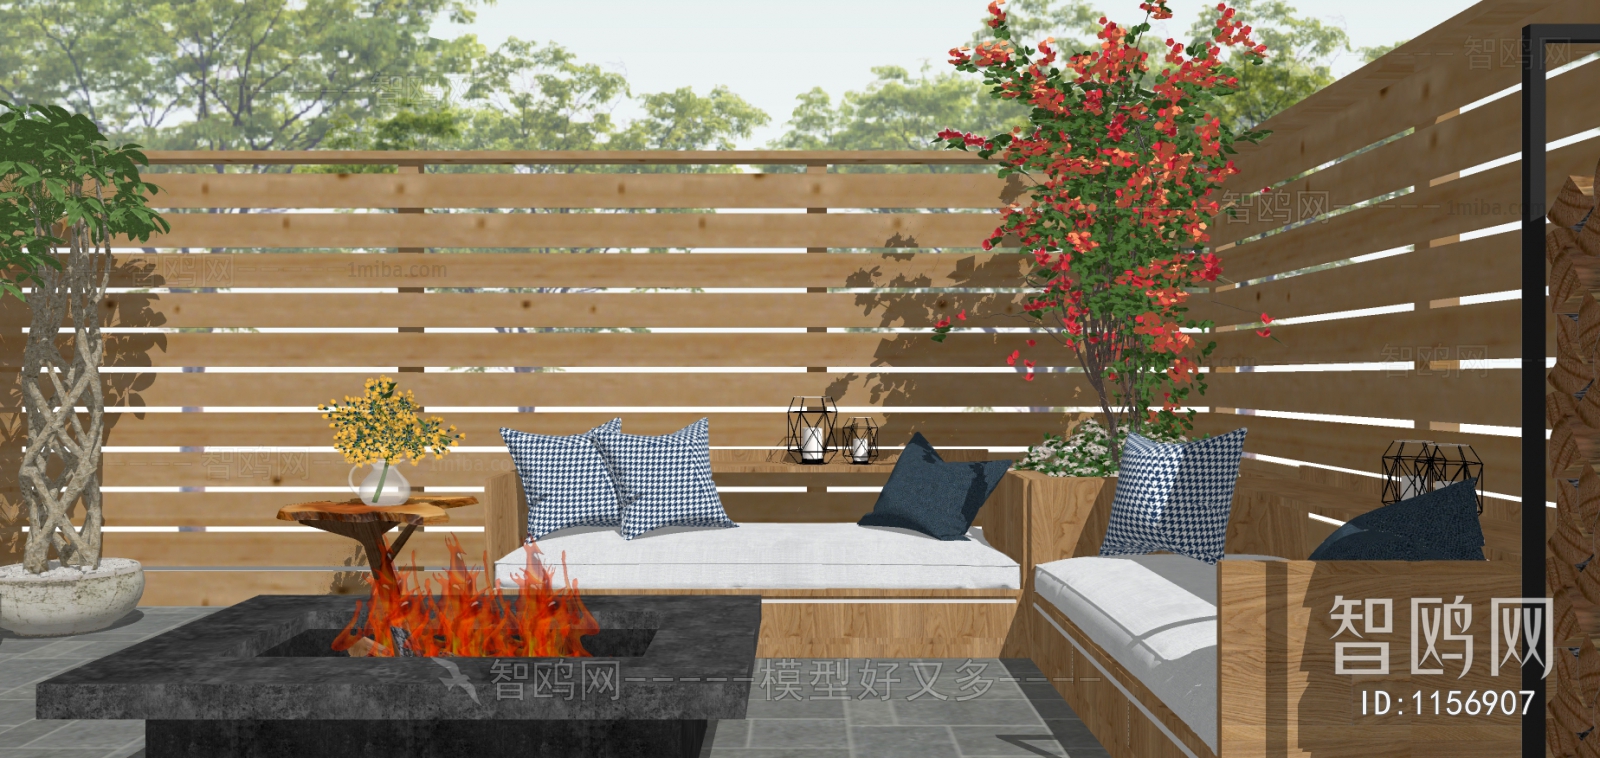 现代休闲庭院 木围栏 户外沙发